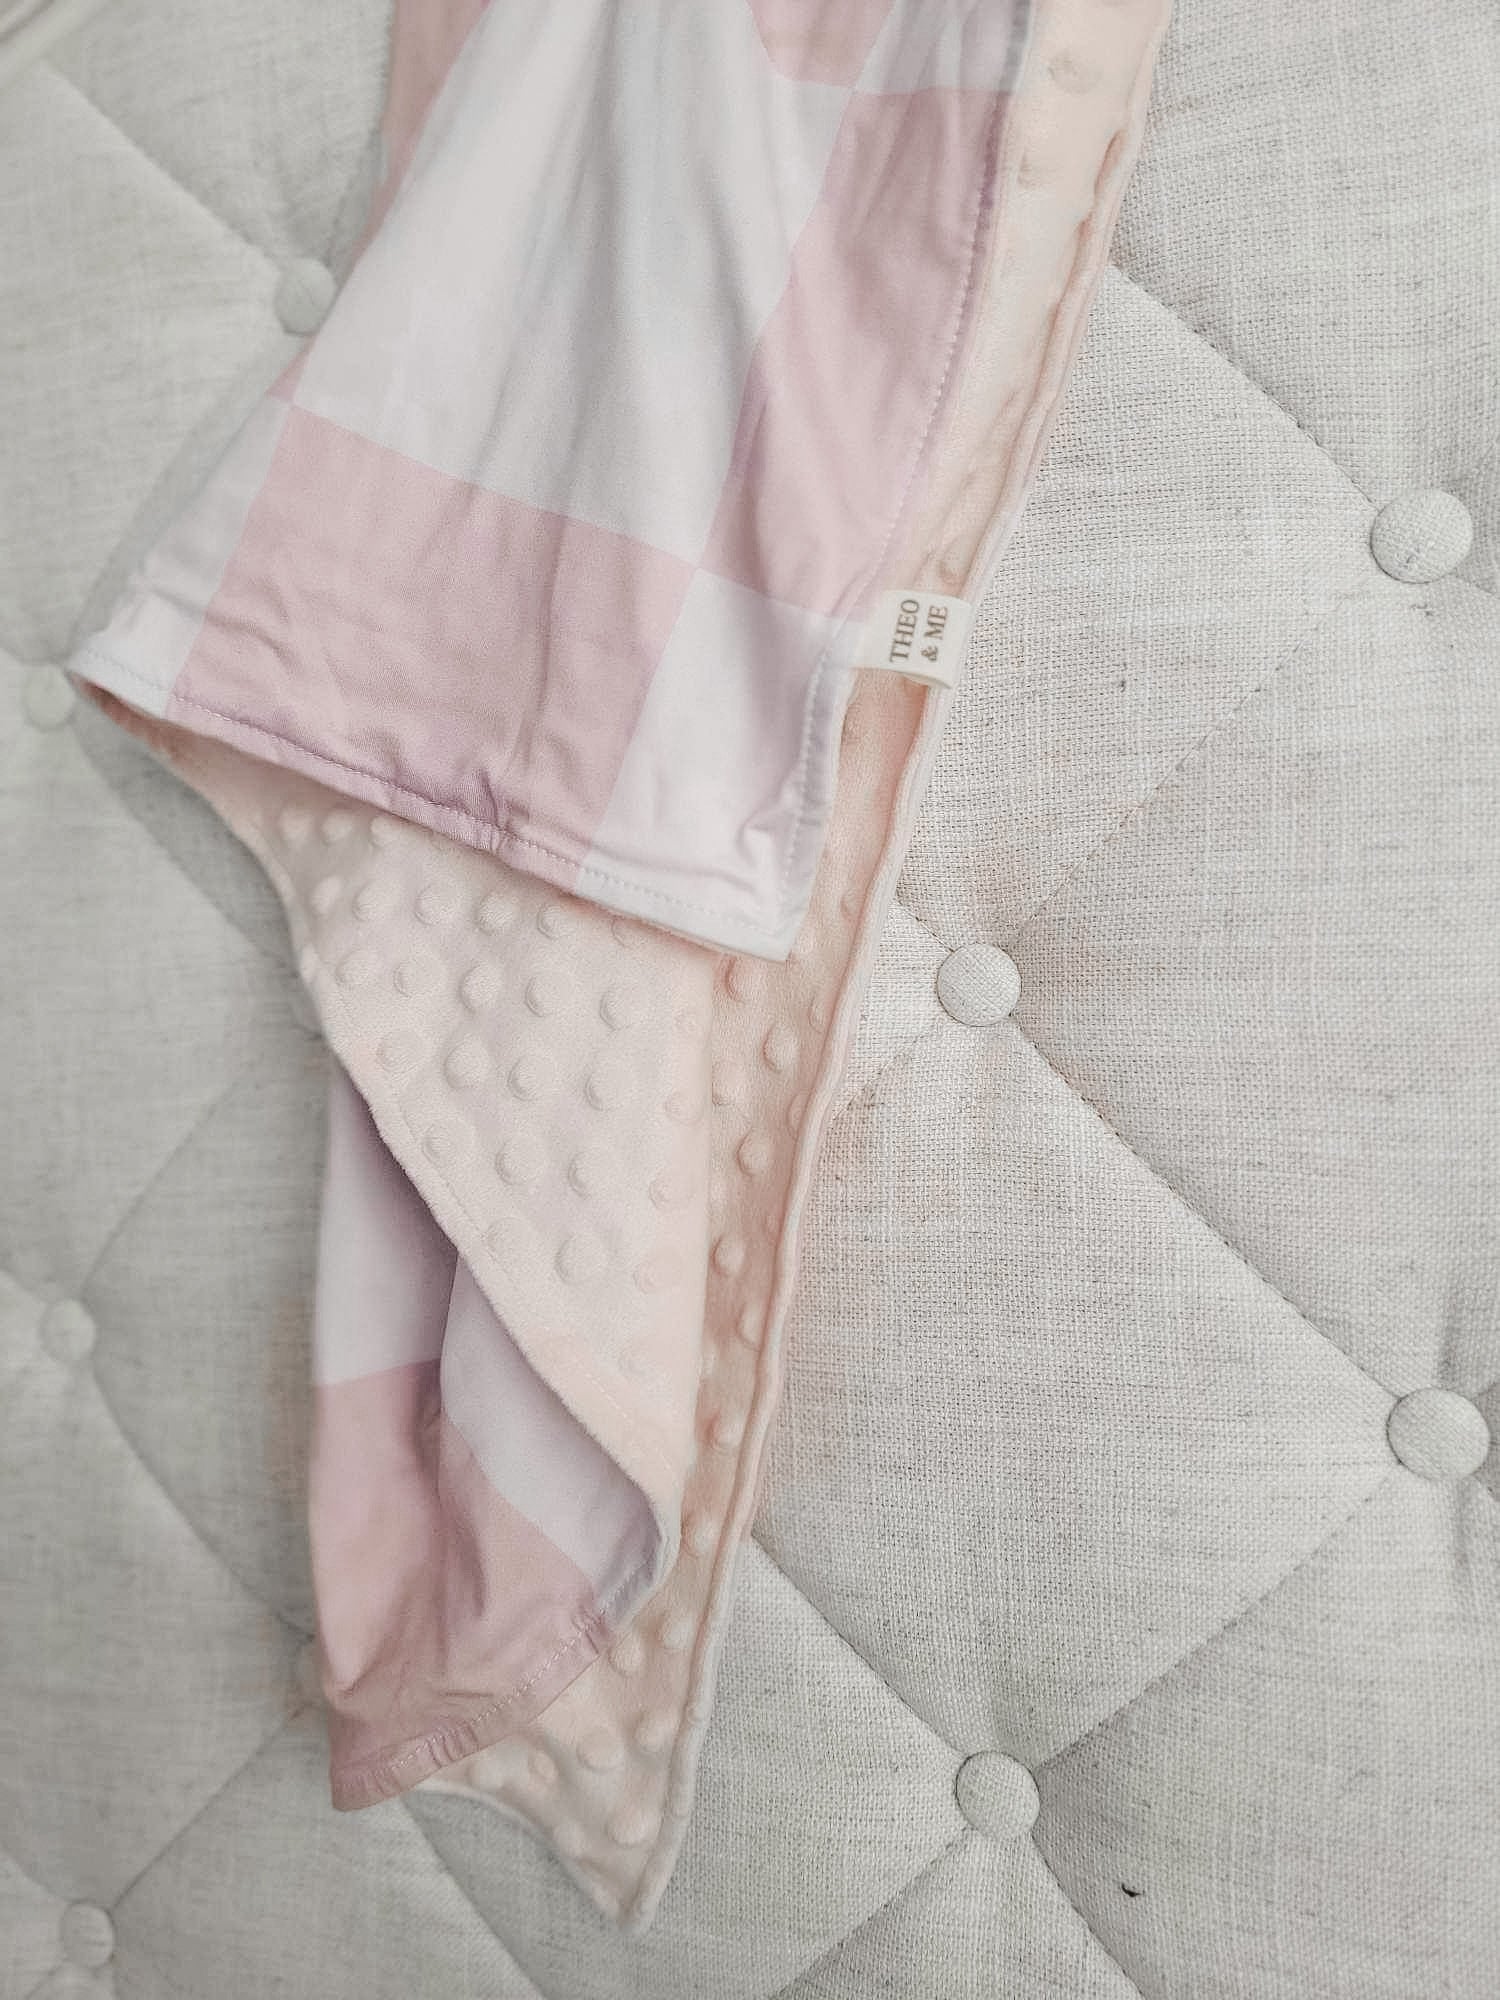 Kids Blankets Minky & Cotton Spandex - Blush/Tan Check